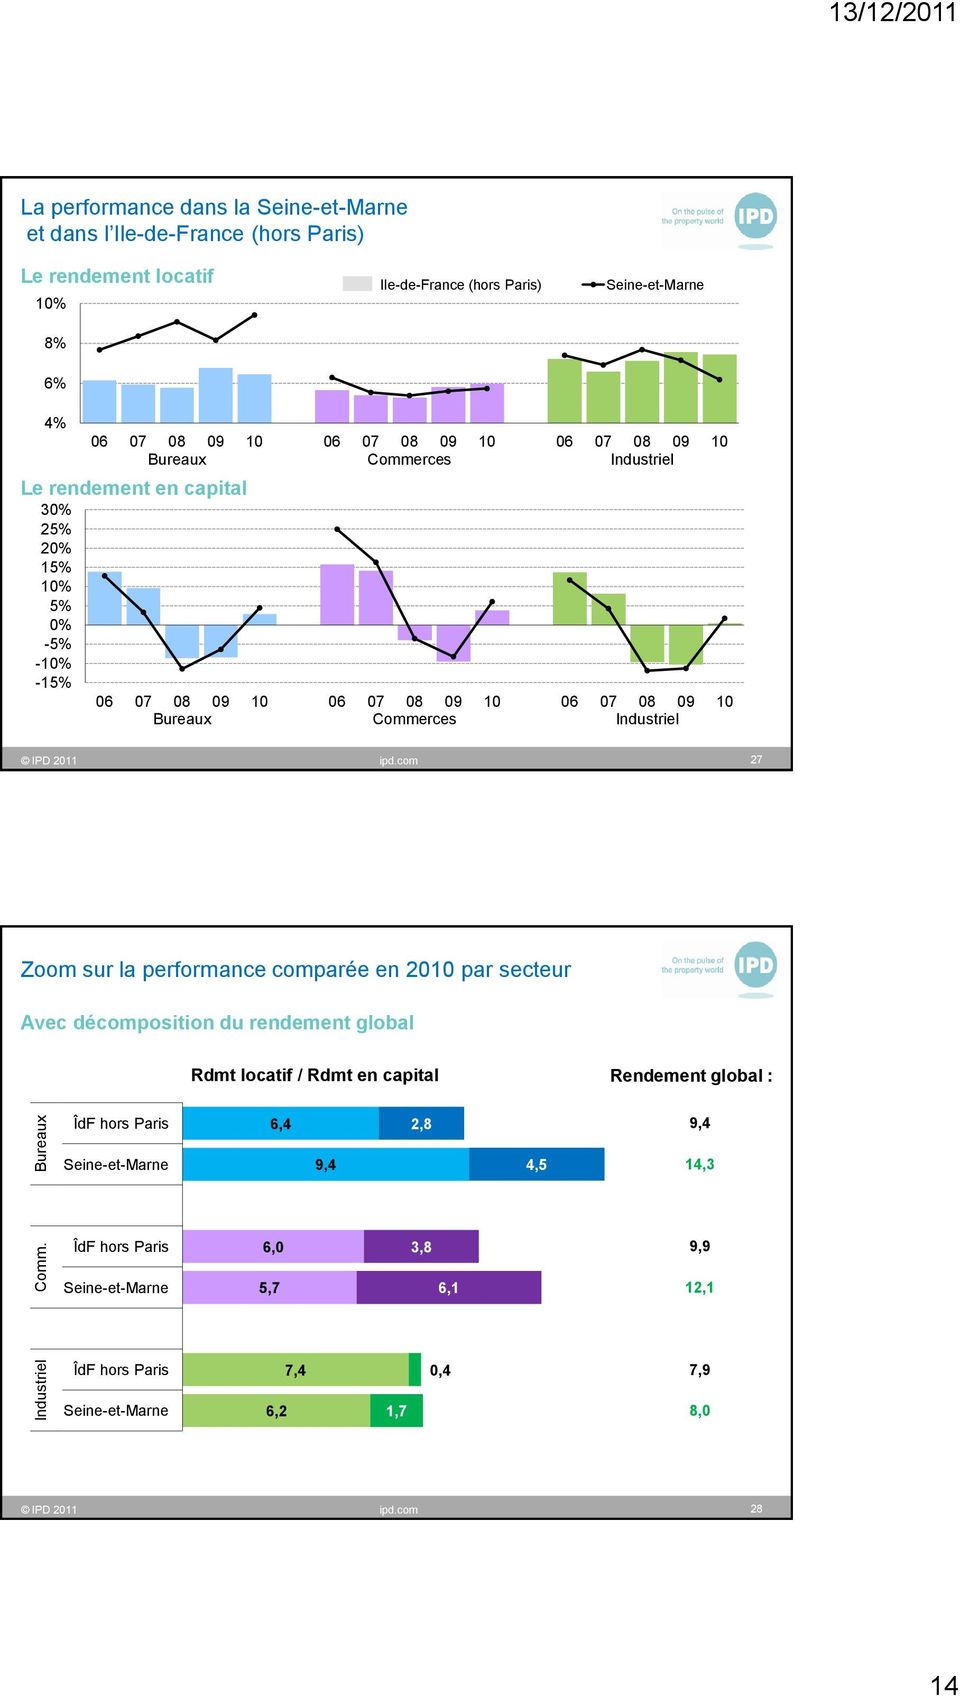 ipd.com 27 Zoom sur la performance comparée en 2010 par secteur Avec décomposition du rendement global Rdmt locatif / Rdmt en capital Rendement